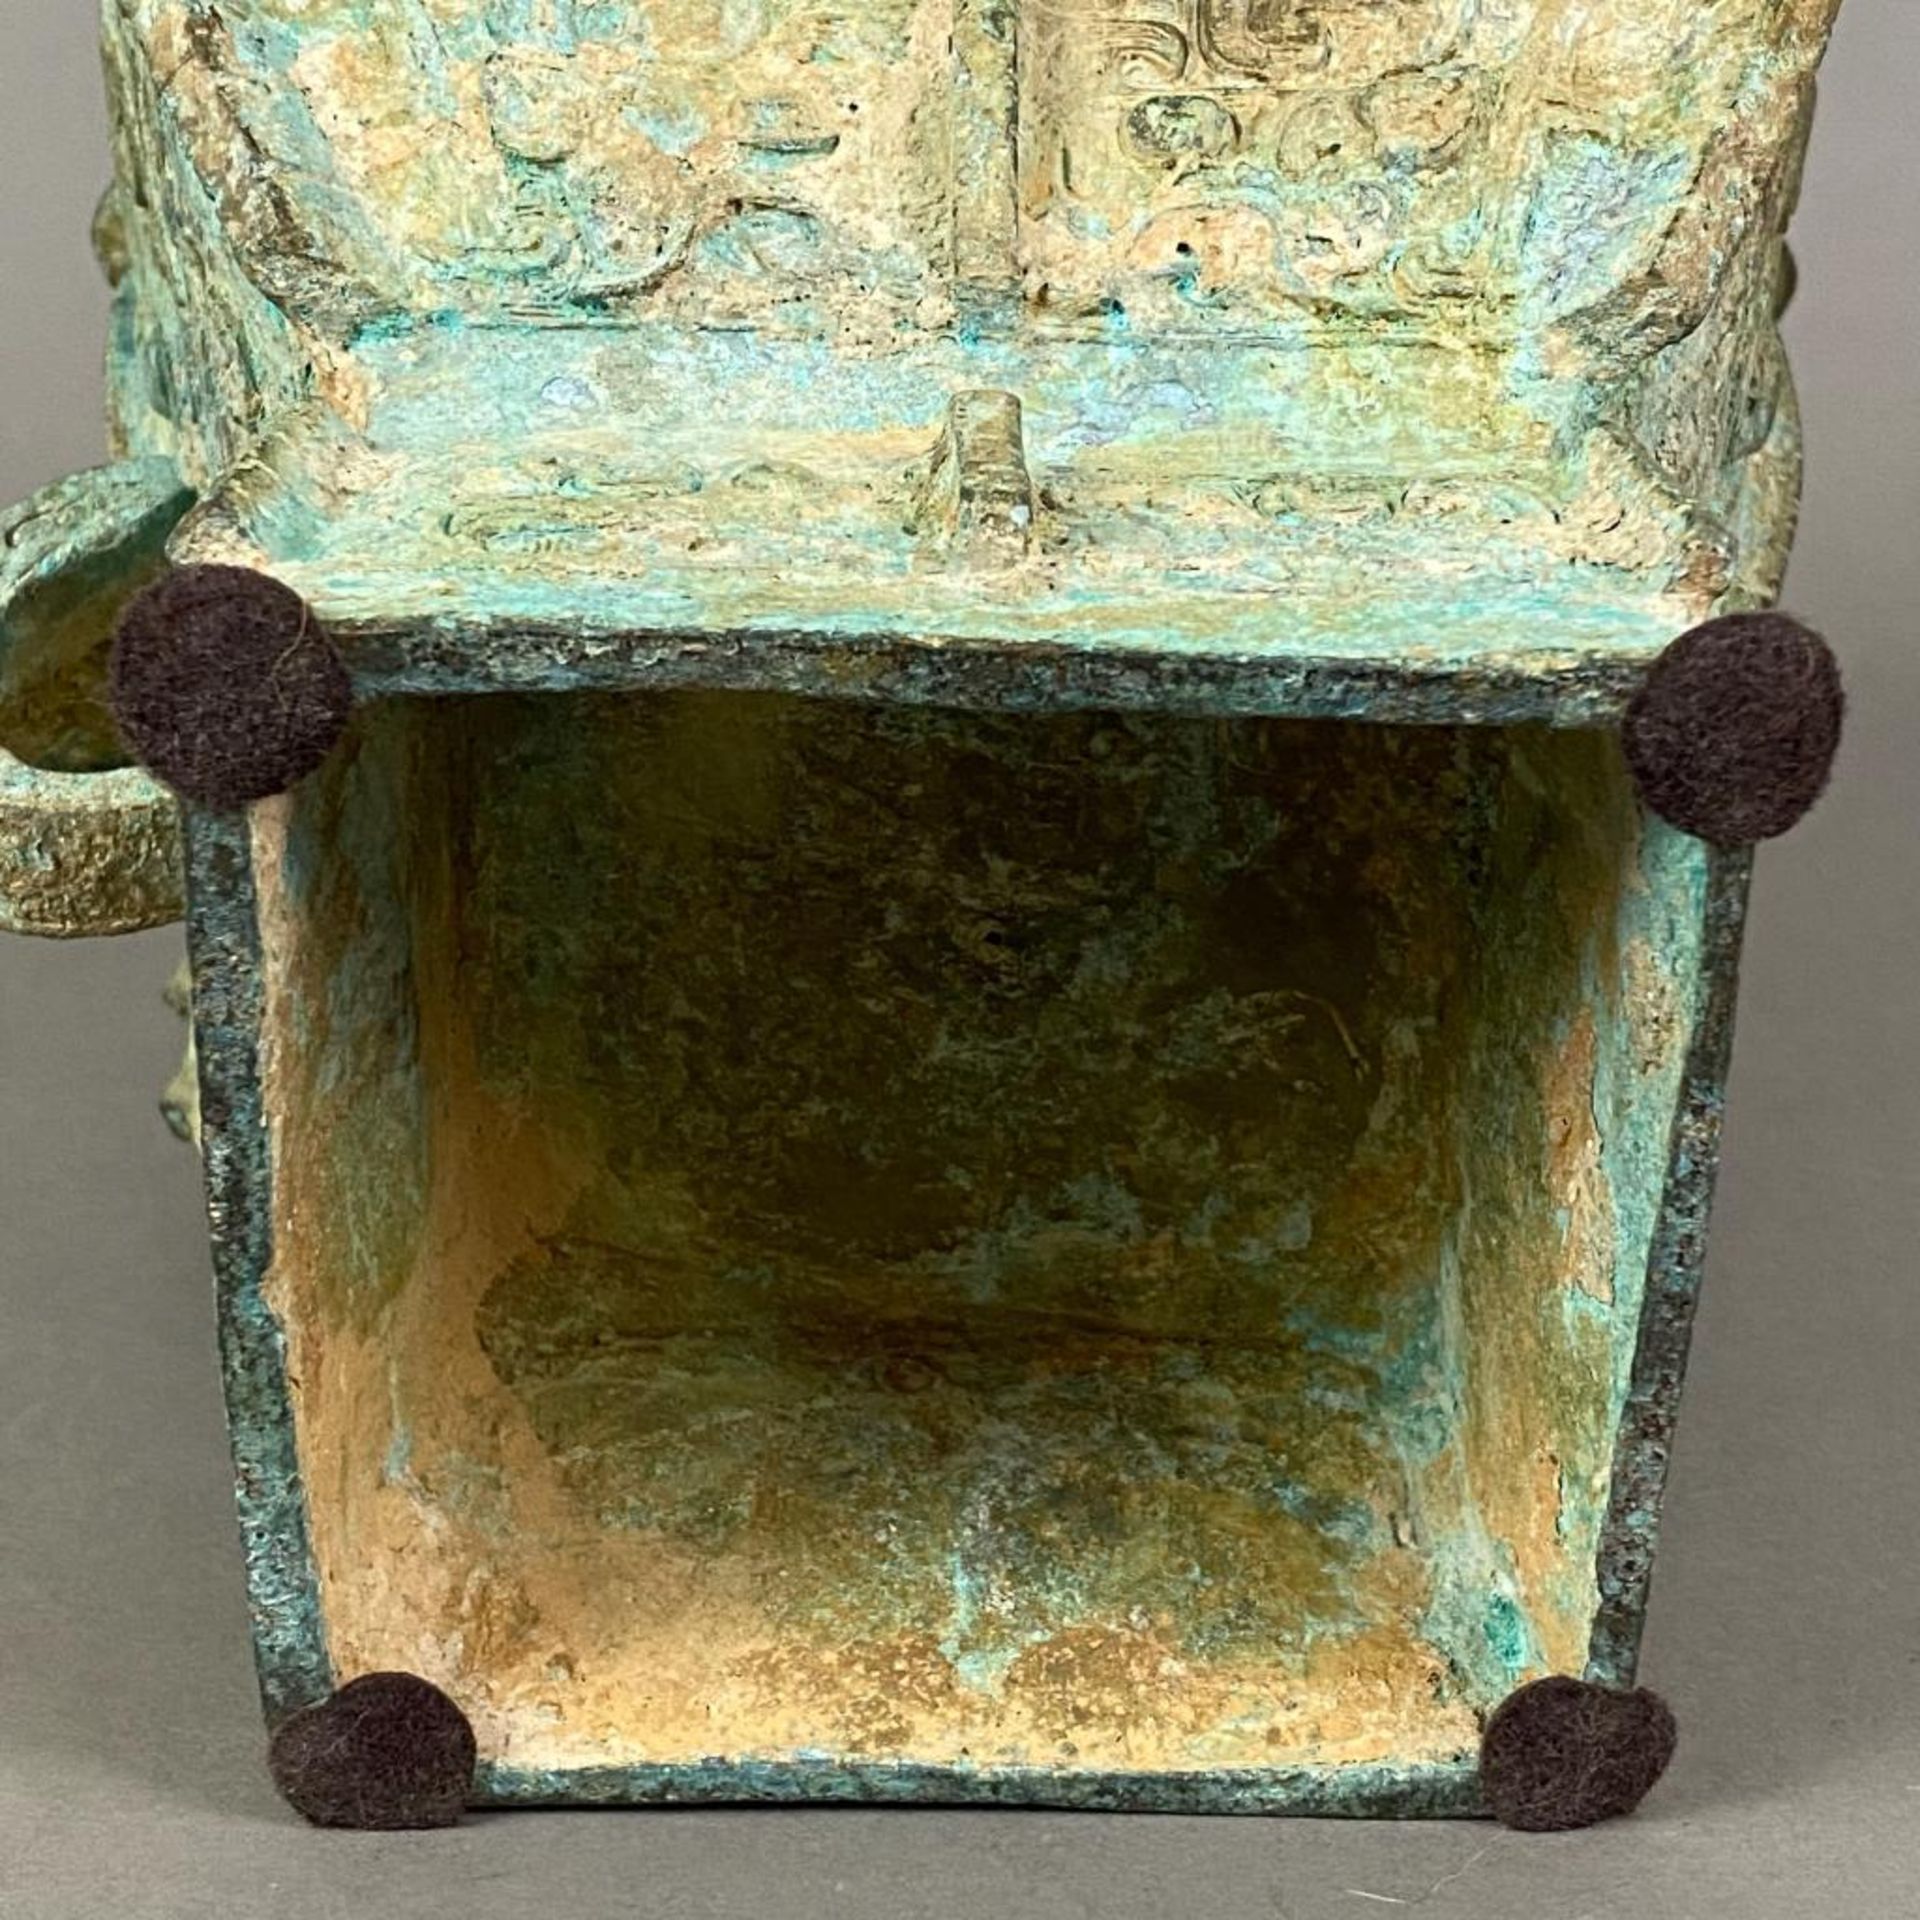 Fanghu-Vase im archaischen Stil - China, grün-braun patinierte Bronze, vierkantige gebauchte Form a - Image 10 of 10